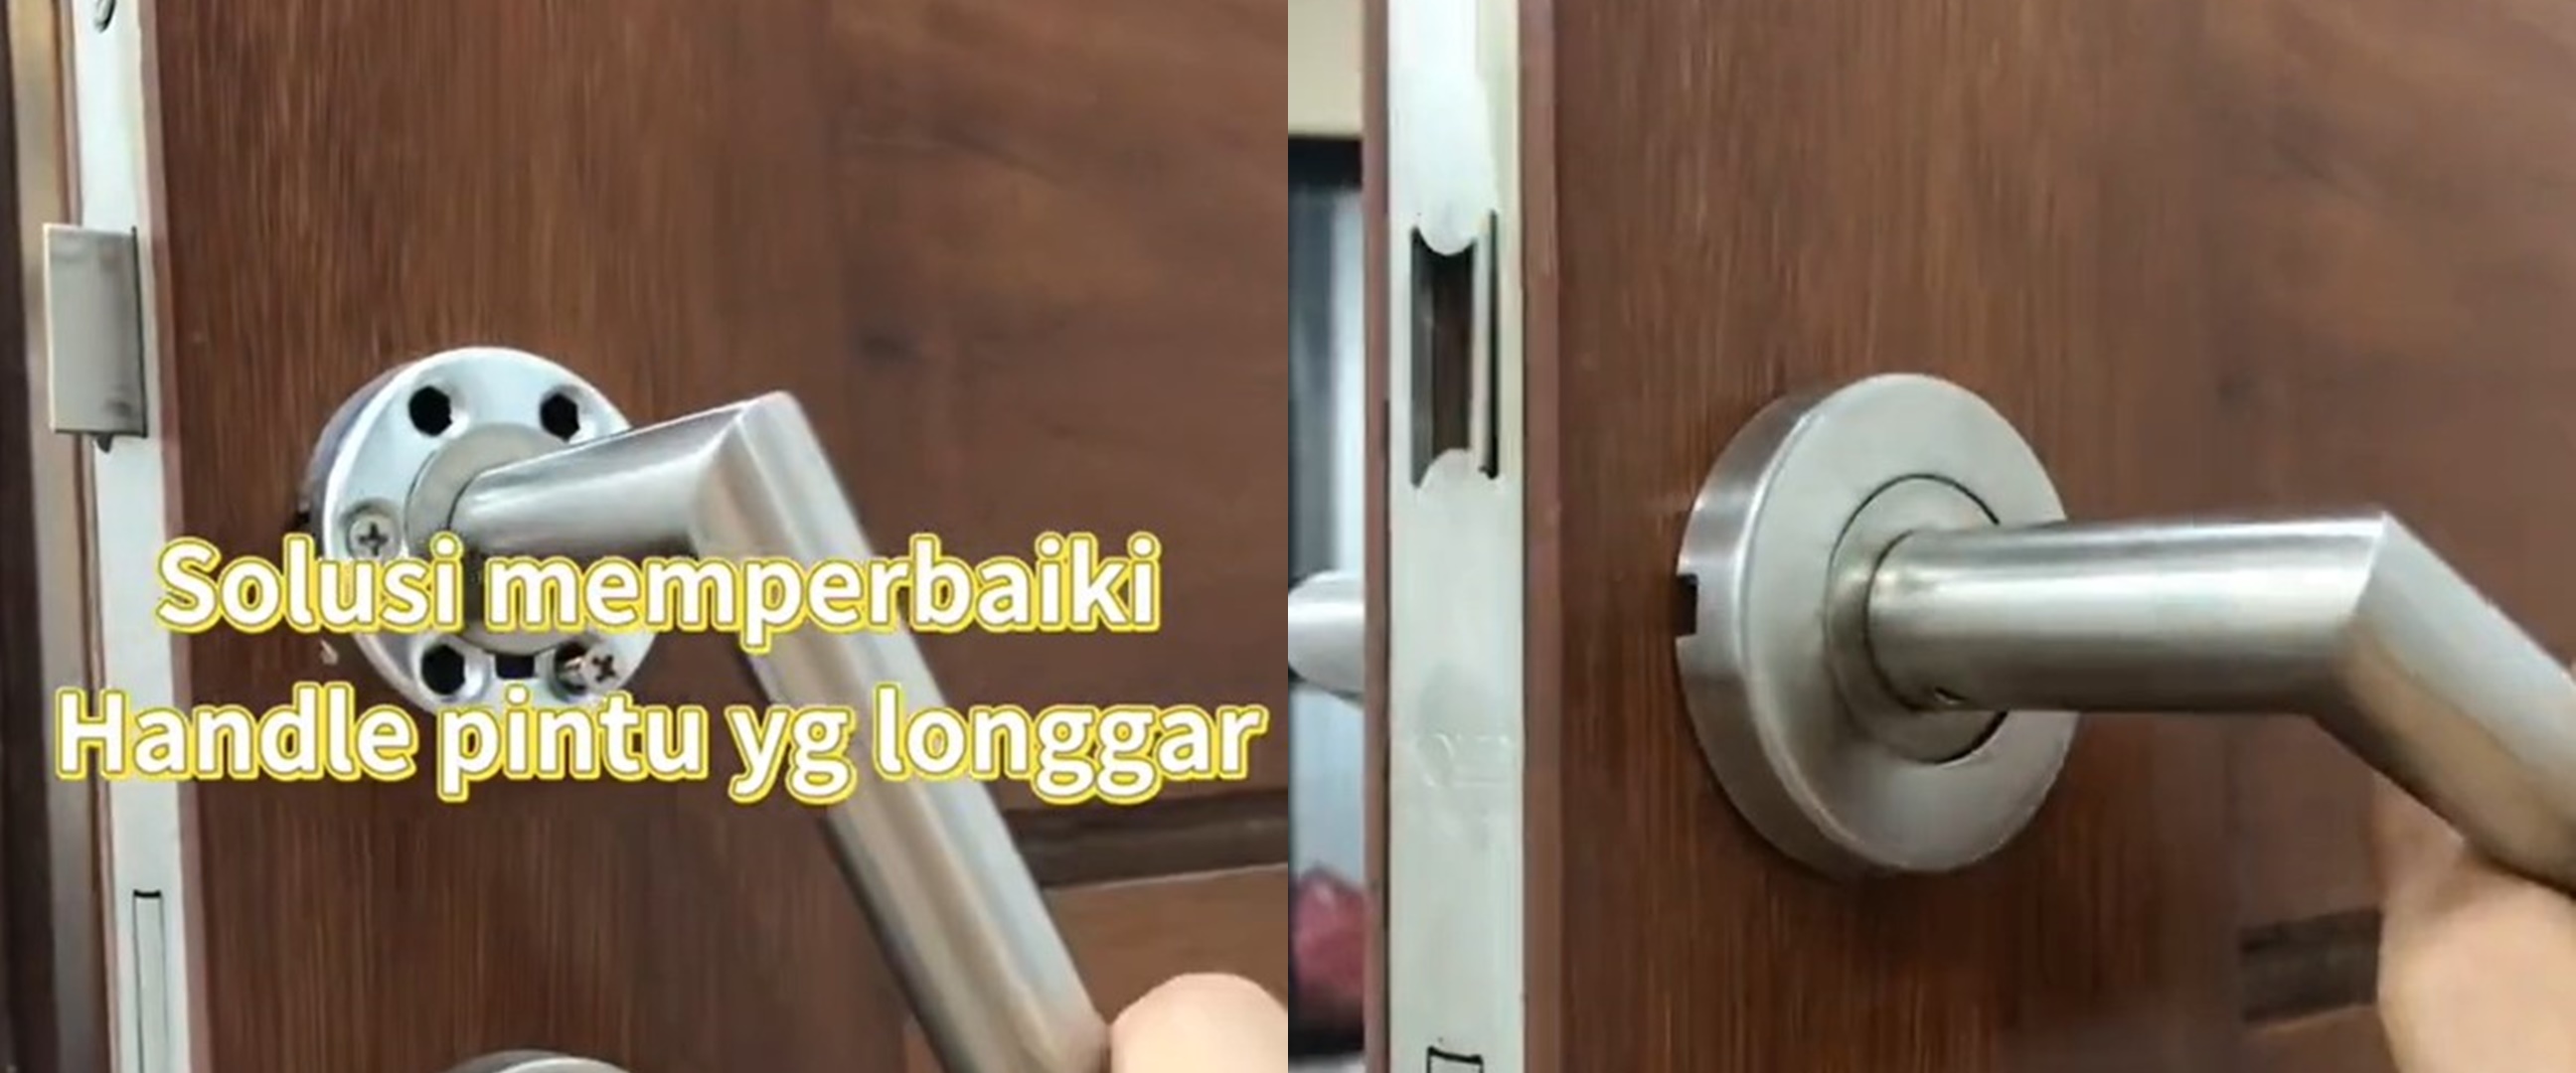 Trik mudah atasi gagang pintu yang longgar tanpa bantuan alat, cuma butuh waktu 1 menit